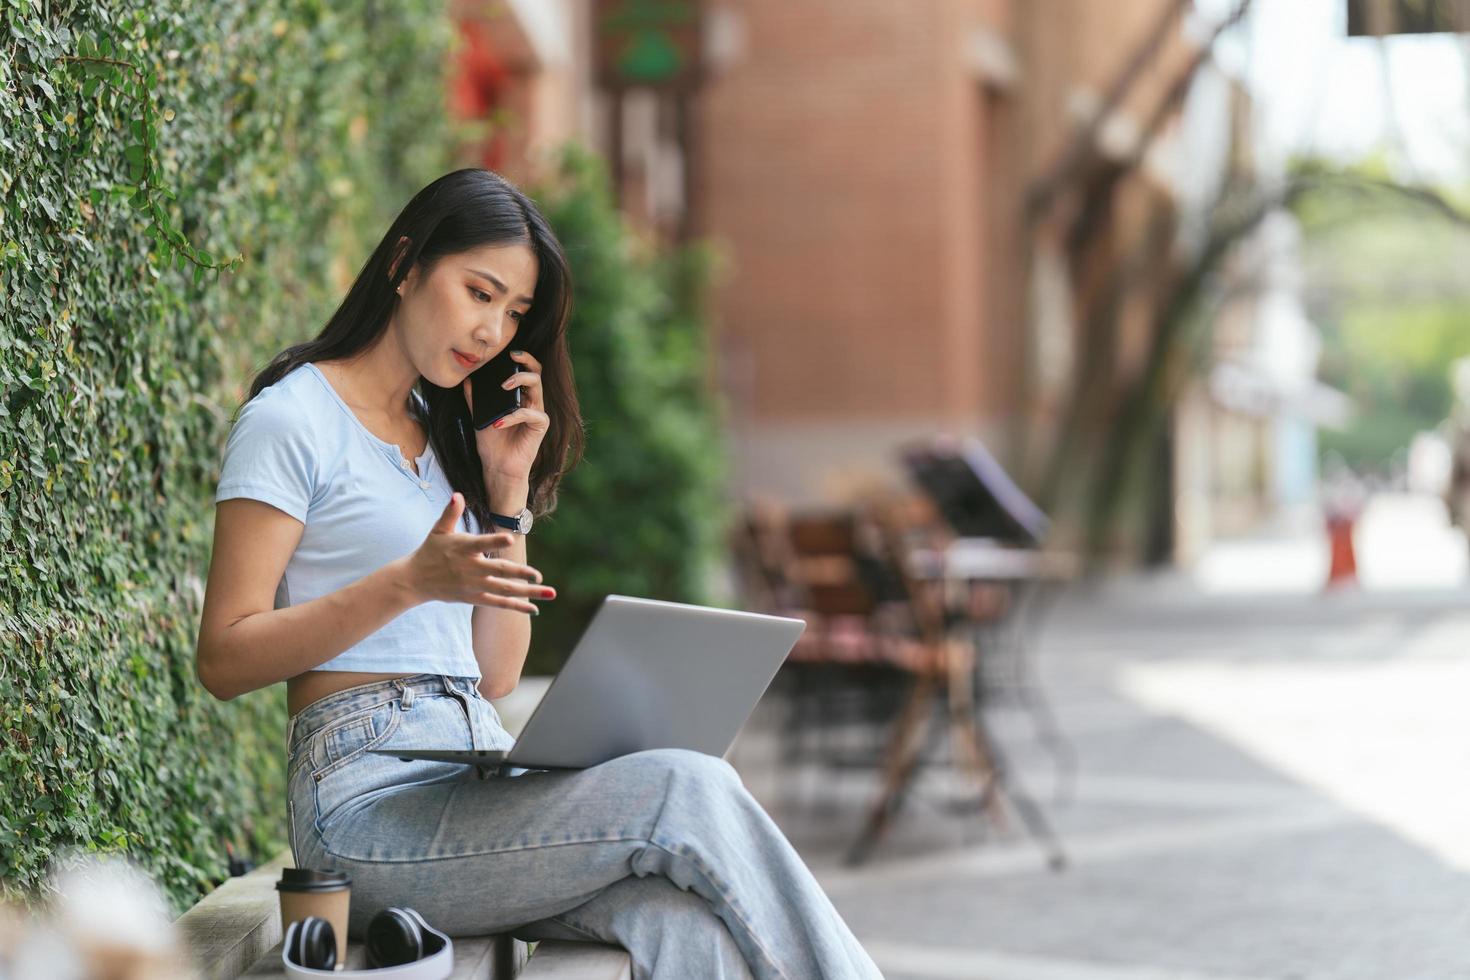 portrait d'une belle femme asiatique assise à l'extérieur pendant l'été, à l'aide d'un ordinateur portable et d'un smartphone à technologie sans fil intelligente, pause-café relaxante au café-restaurant. photo